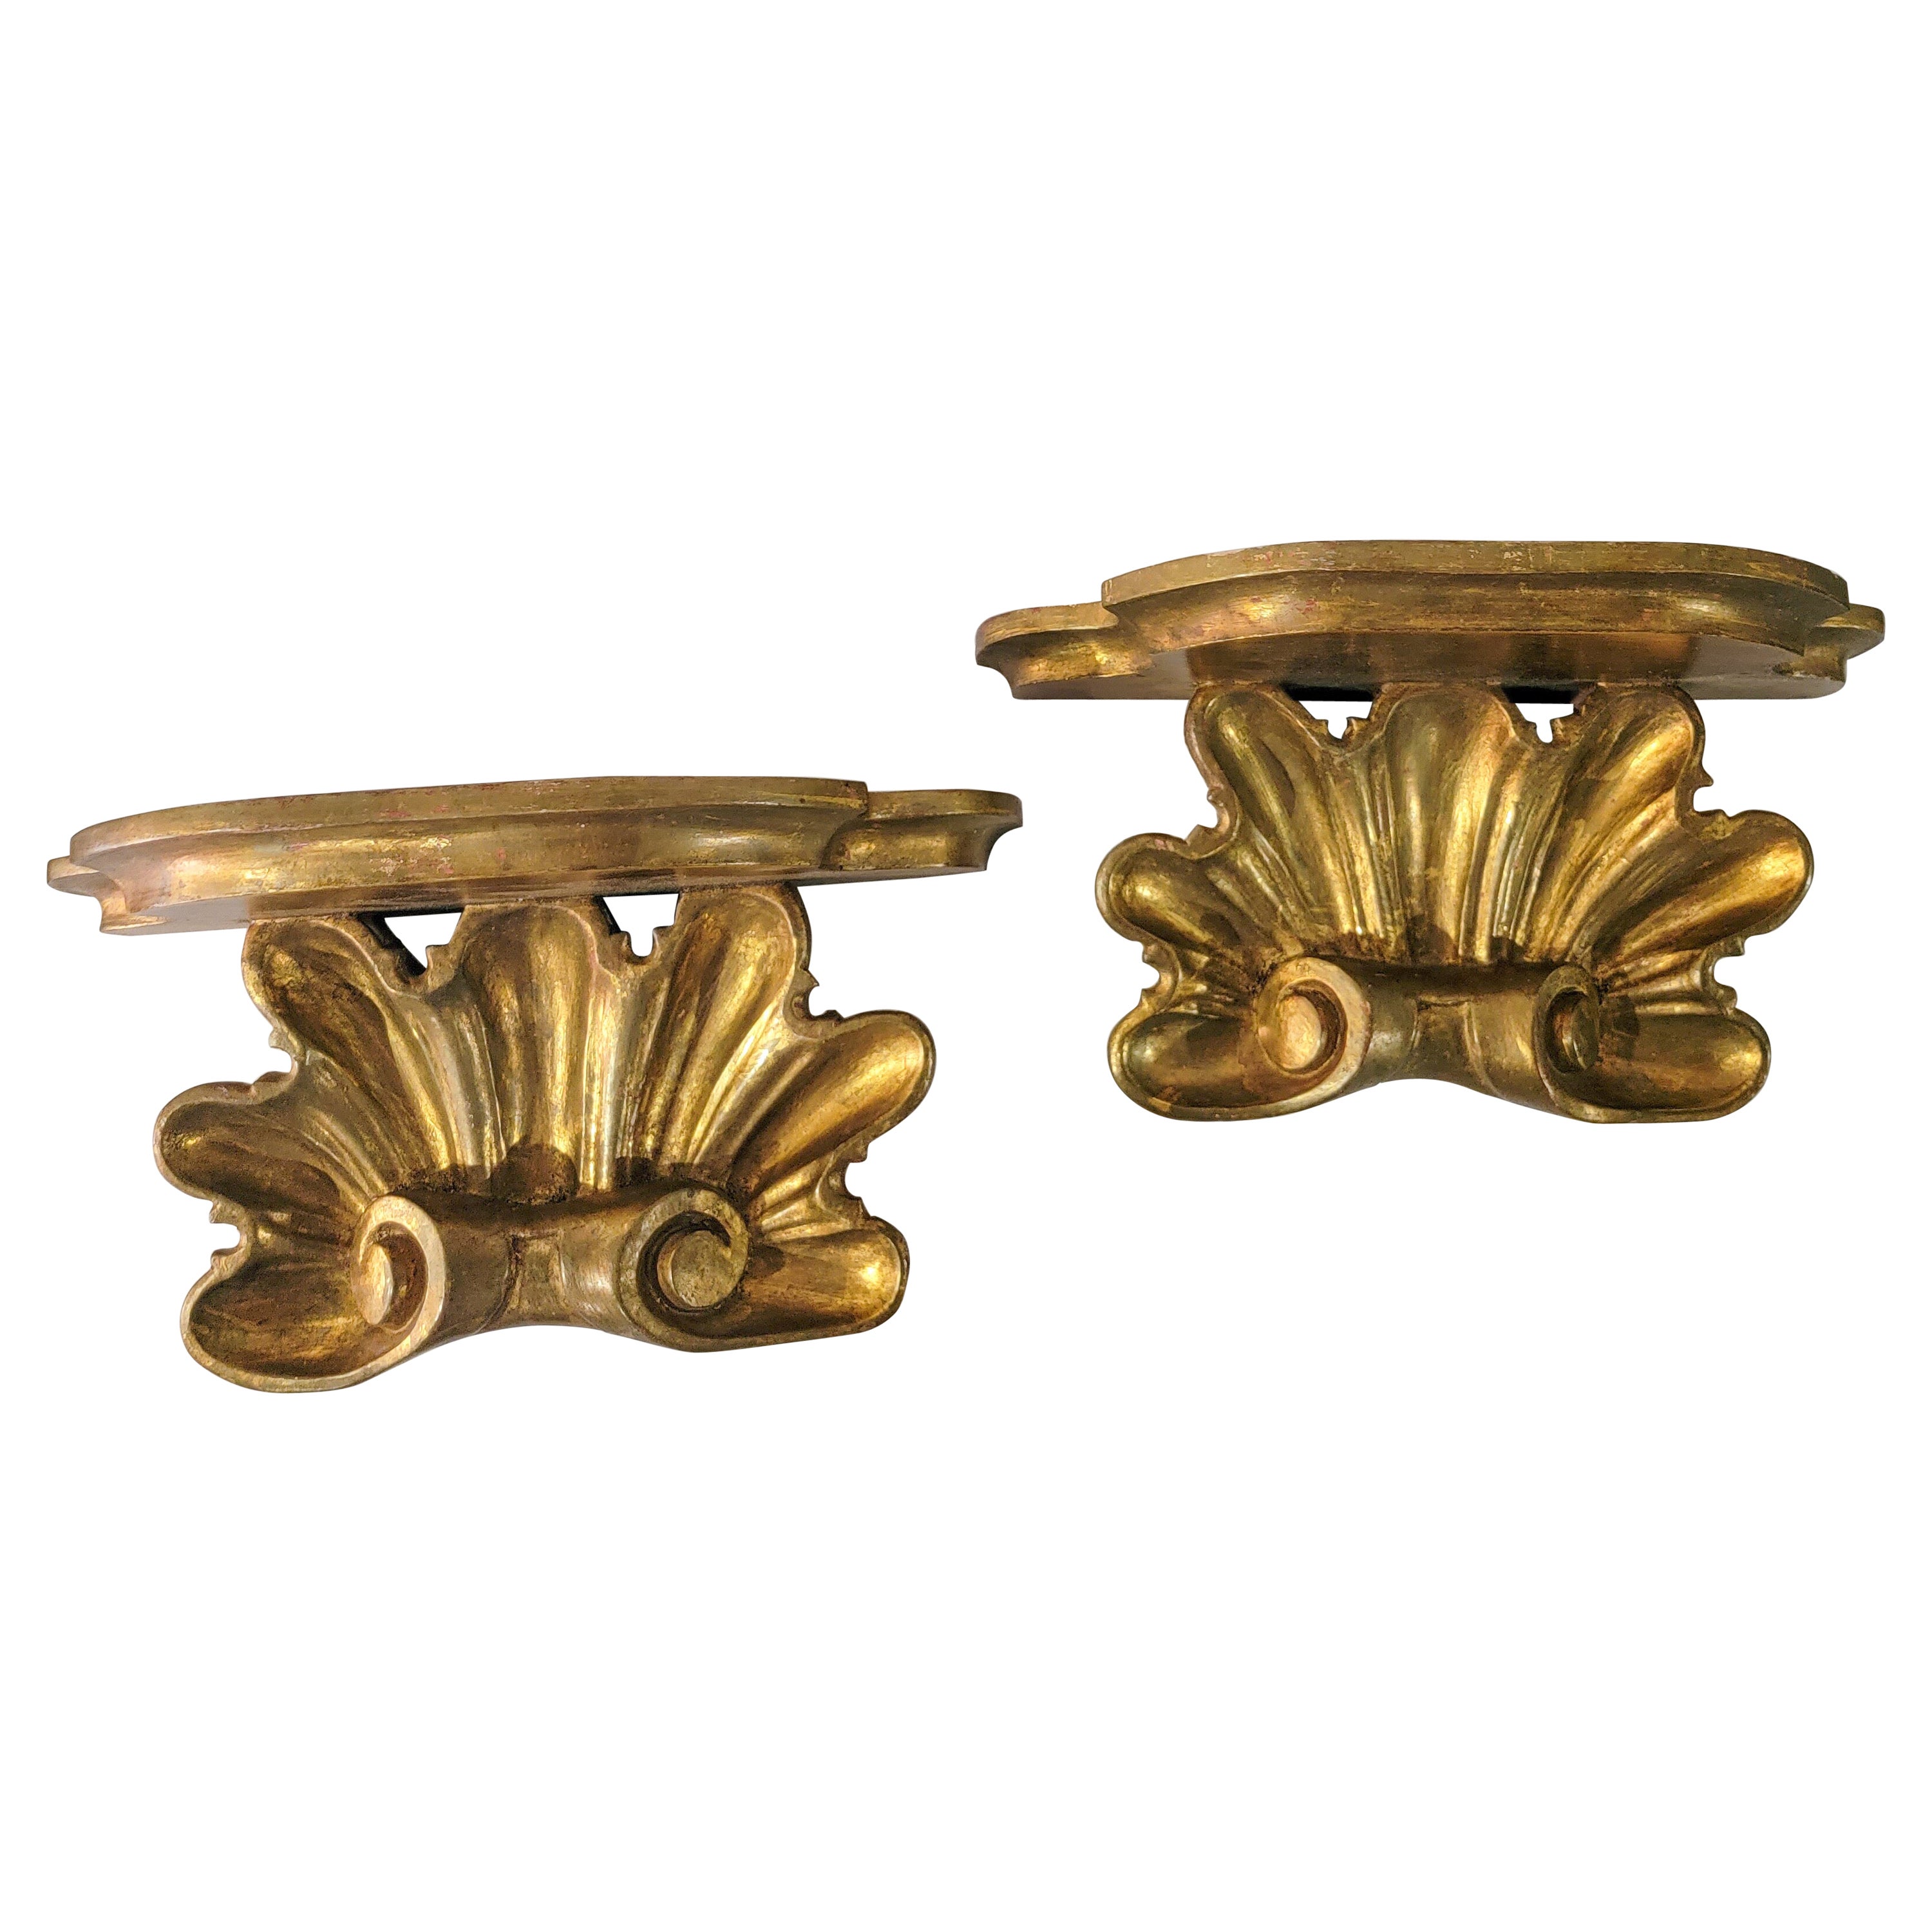 Début du 20e siècle. Paire de supports en bois doré sculpté italien de style rococo en forme de coquillage